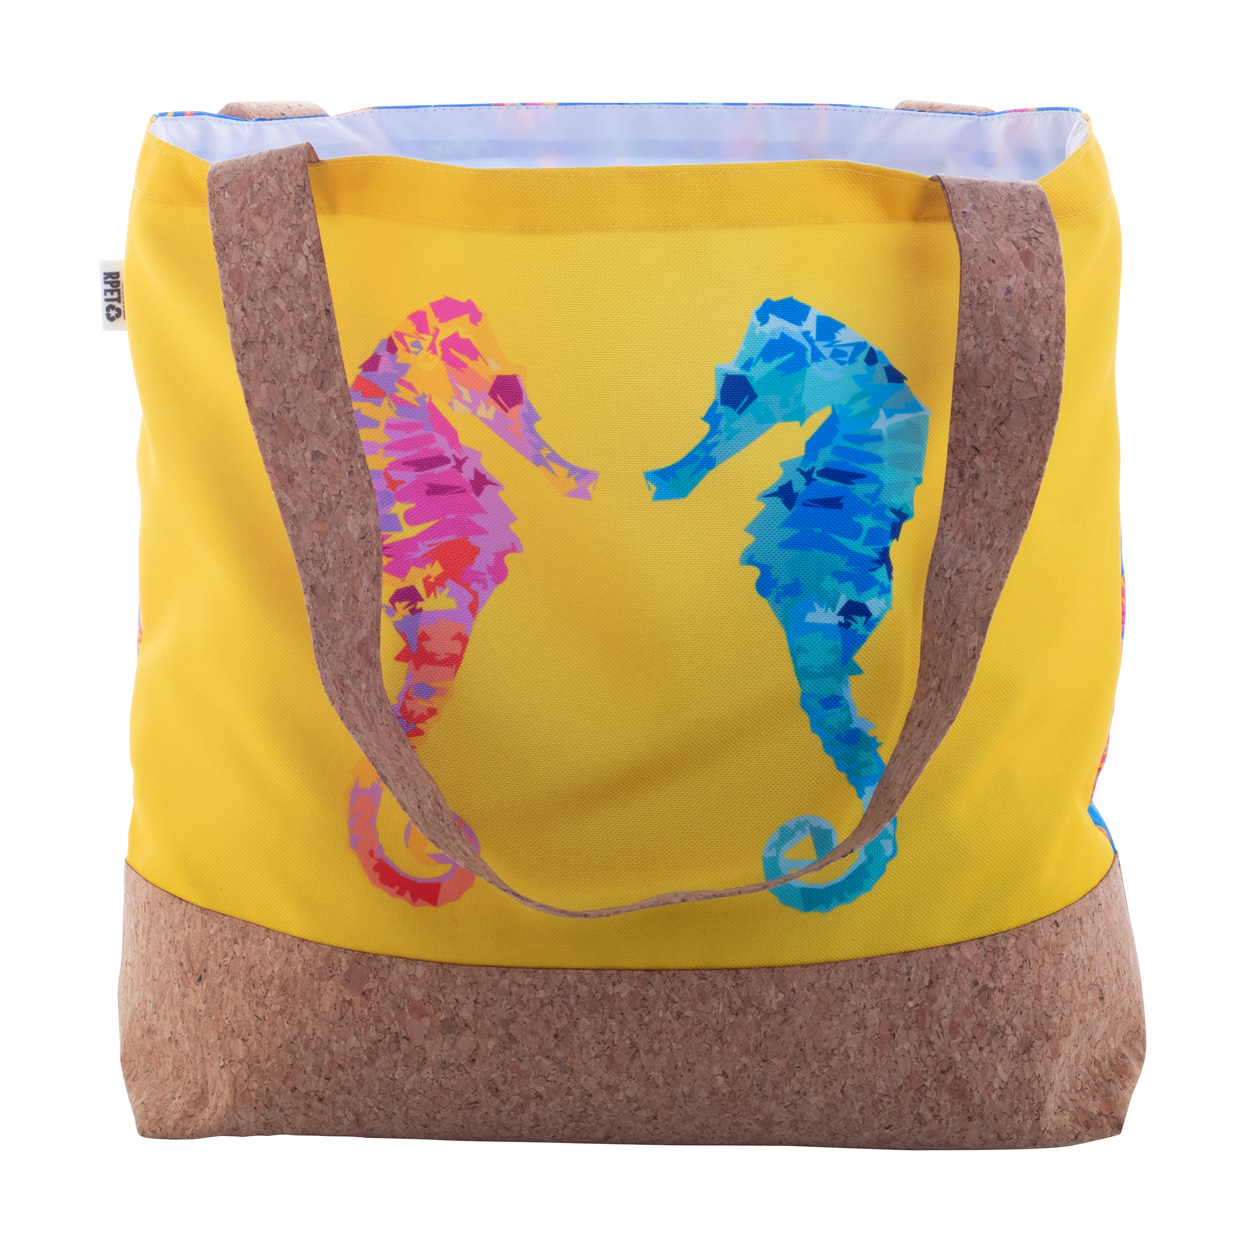 SuboShop Playa Strandtasche auf Bestellung - Weiß 